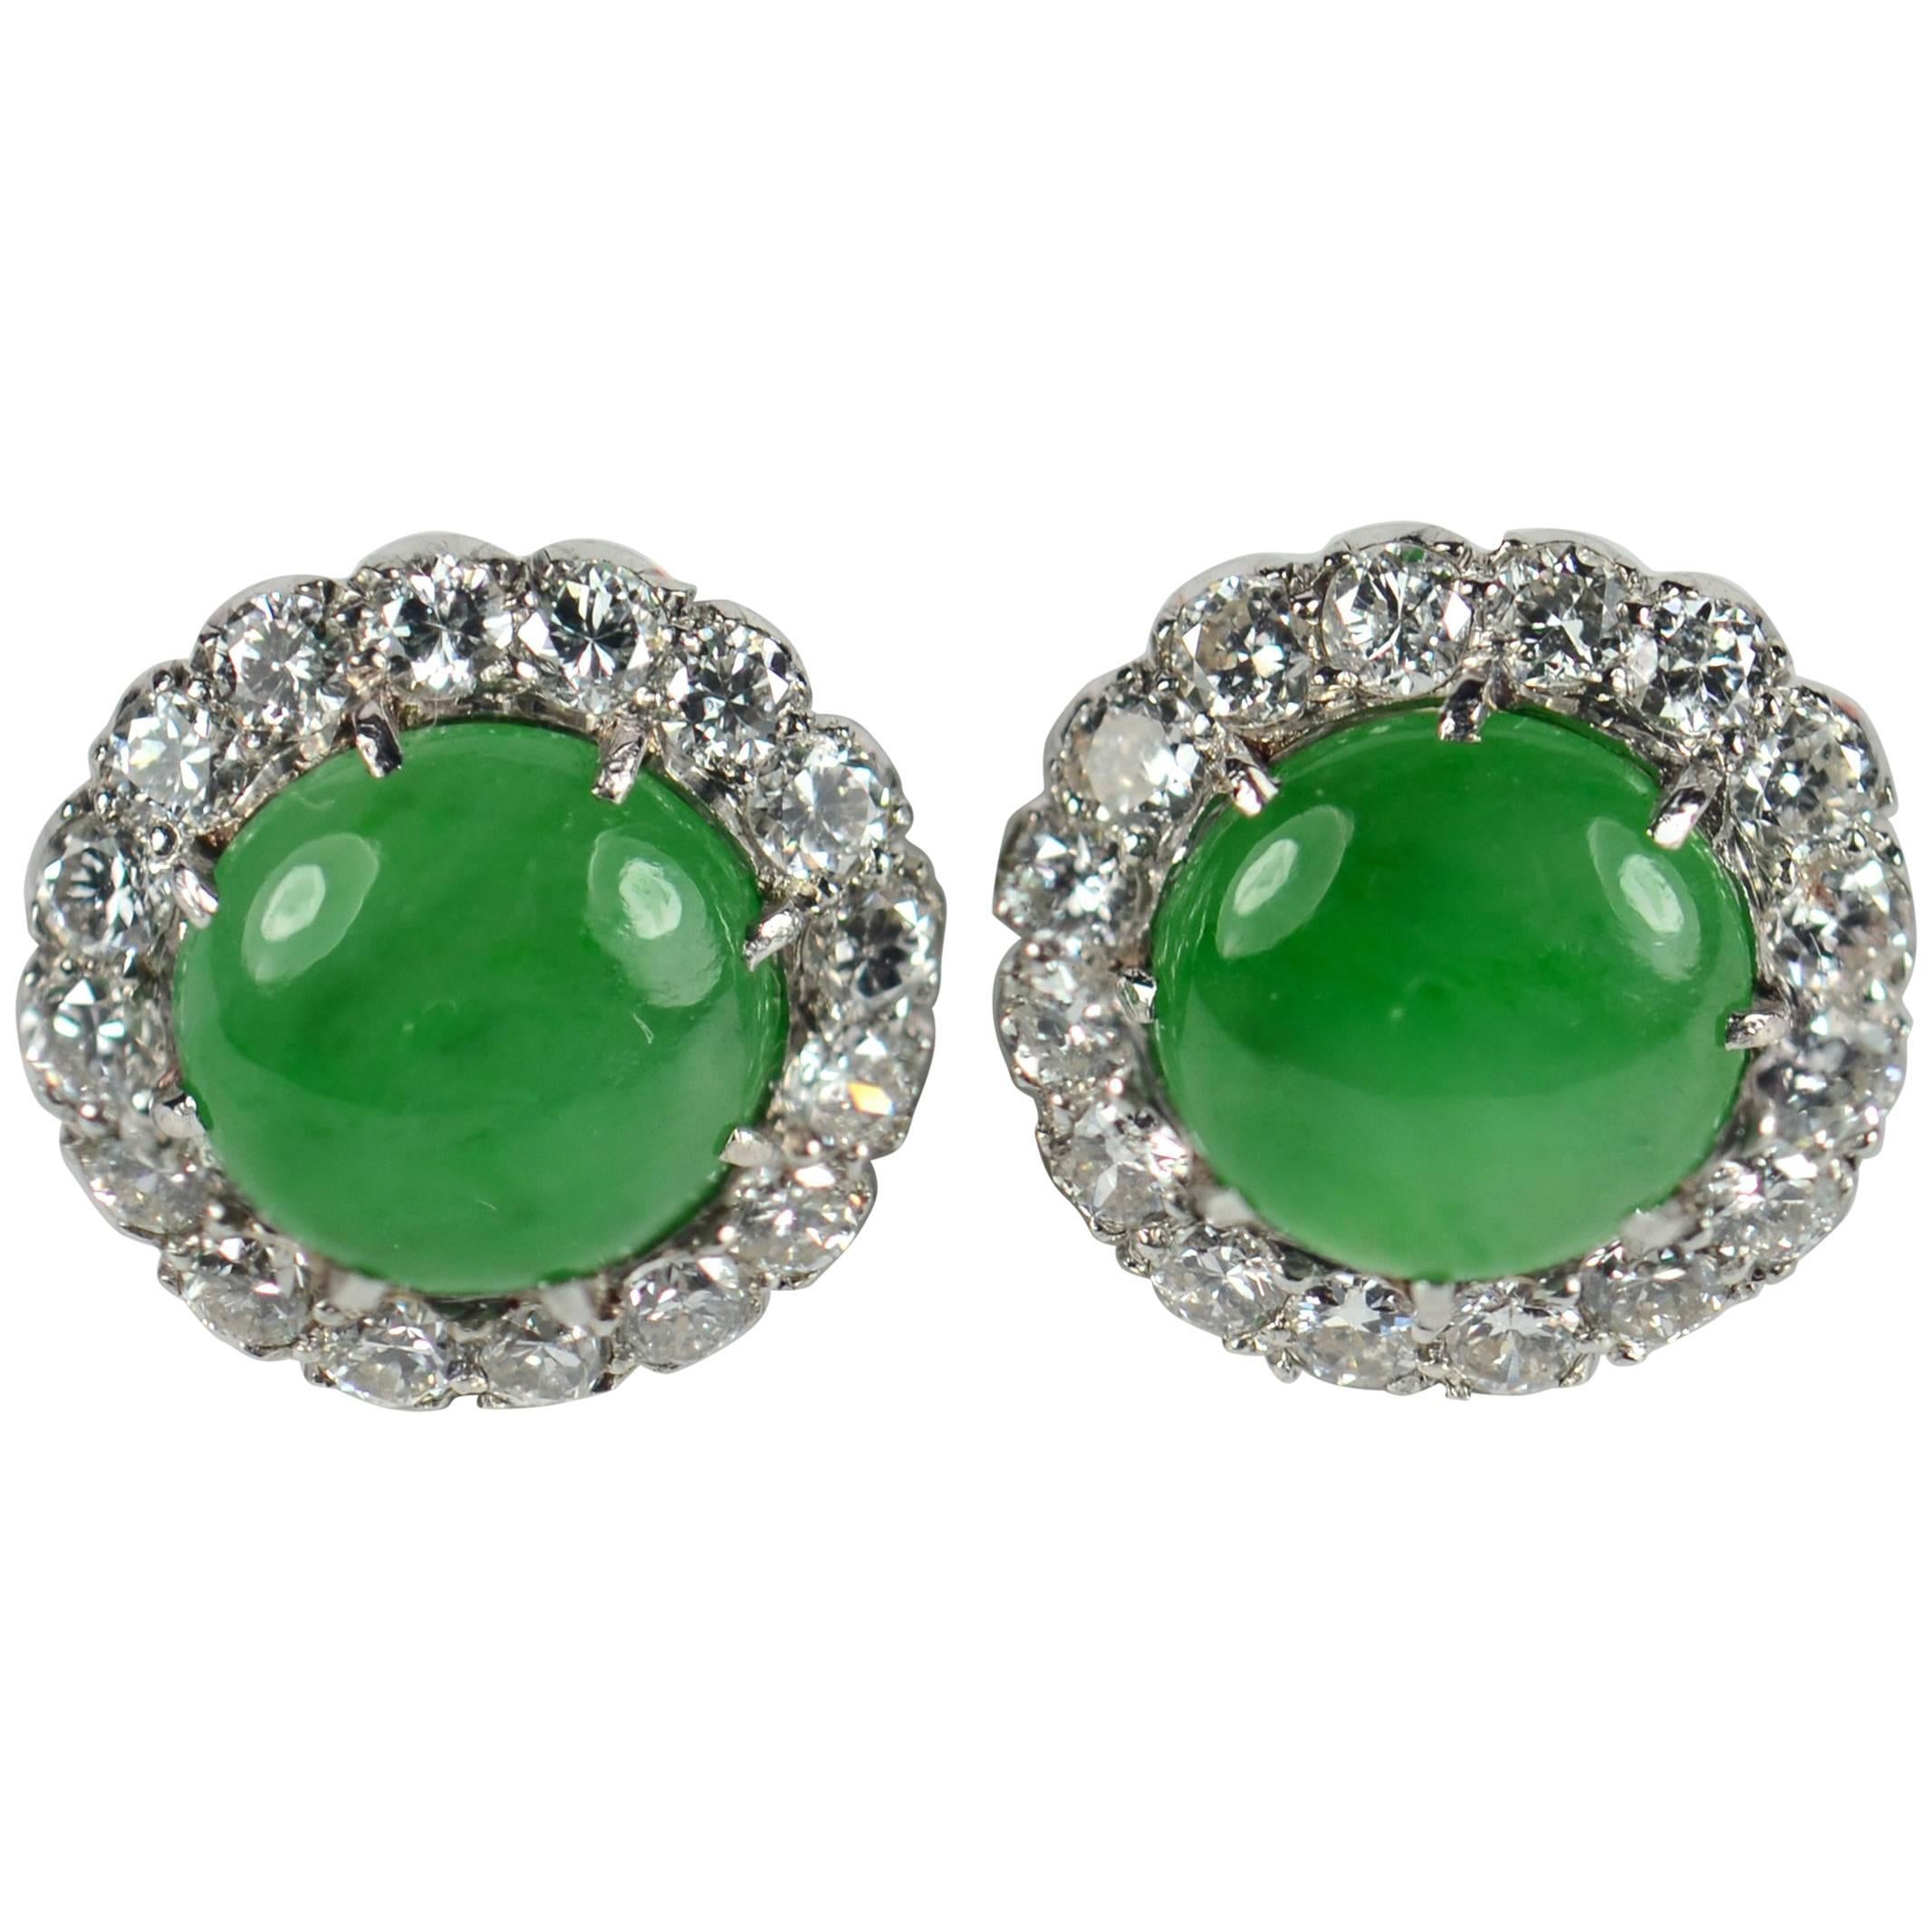 Untreated Green Jade White Diamond Cluster Stud Earrings